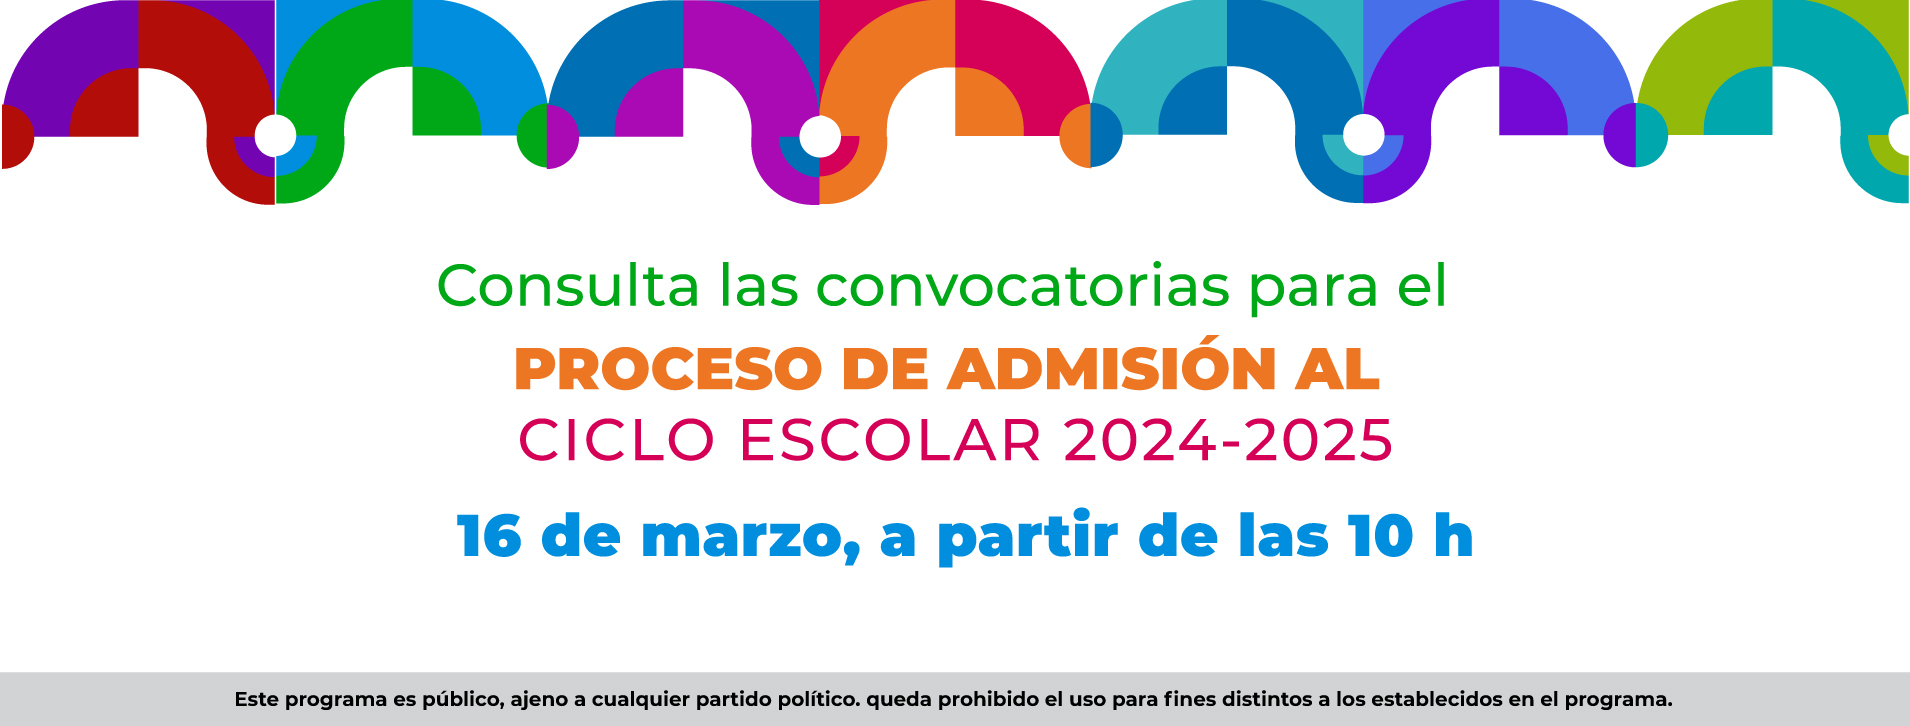 Proceso de admisión ciclo escolar 2024 - 2025